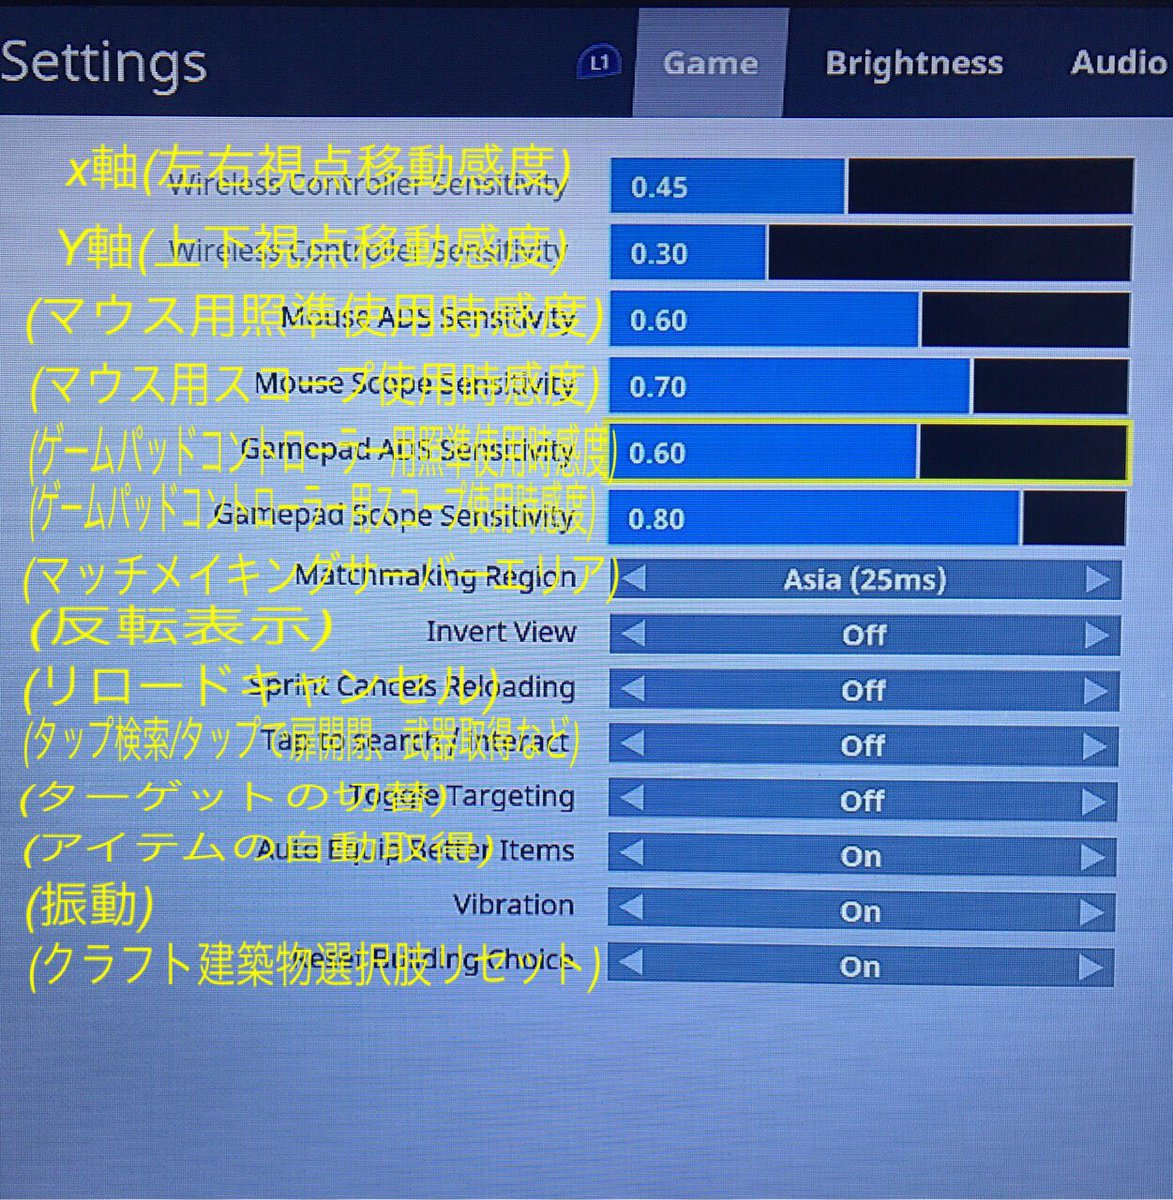 ট ইট র 朧蝶 Chap Fortnite 新パッチ導入後の設定が使用サーバー含め全てリセットされている状態なので再設定の必要がありました 添付の写真はps4版のゲーム設定の画面 英語表記の所を日本語に直したものです 表示の数値は適当に動かしたものです